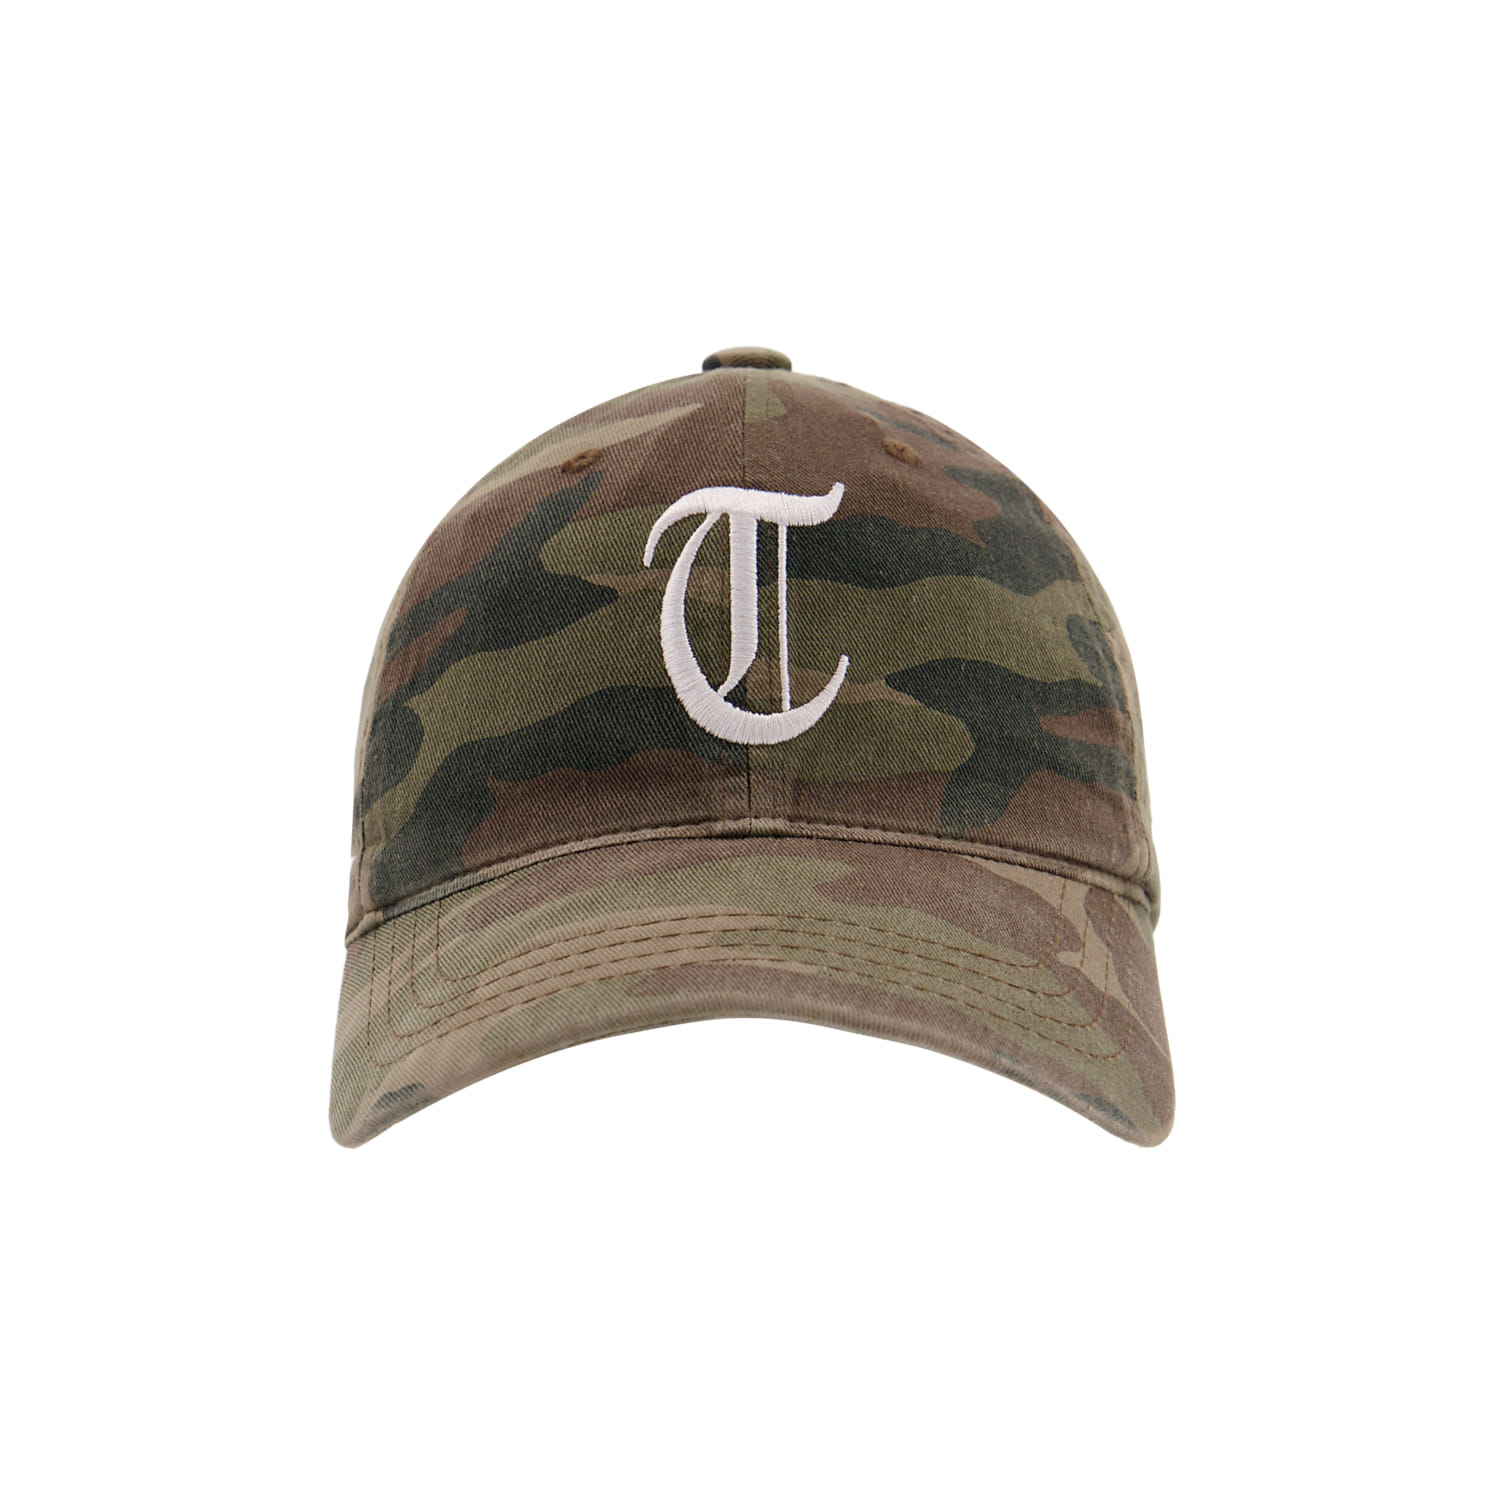 Tuewid souvenir cap ‘T’ ‘U’ ‘E’ ‘W’ ‘I’ ‘D’ (Camo og)